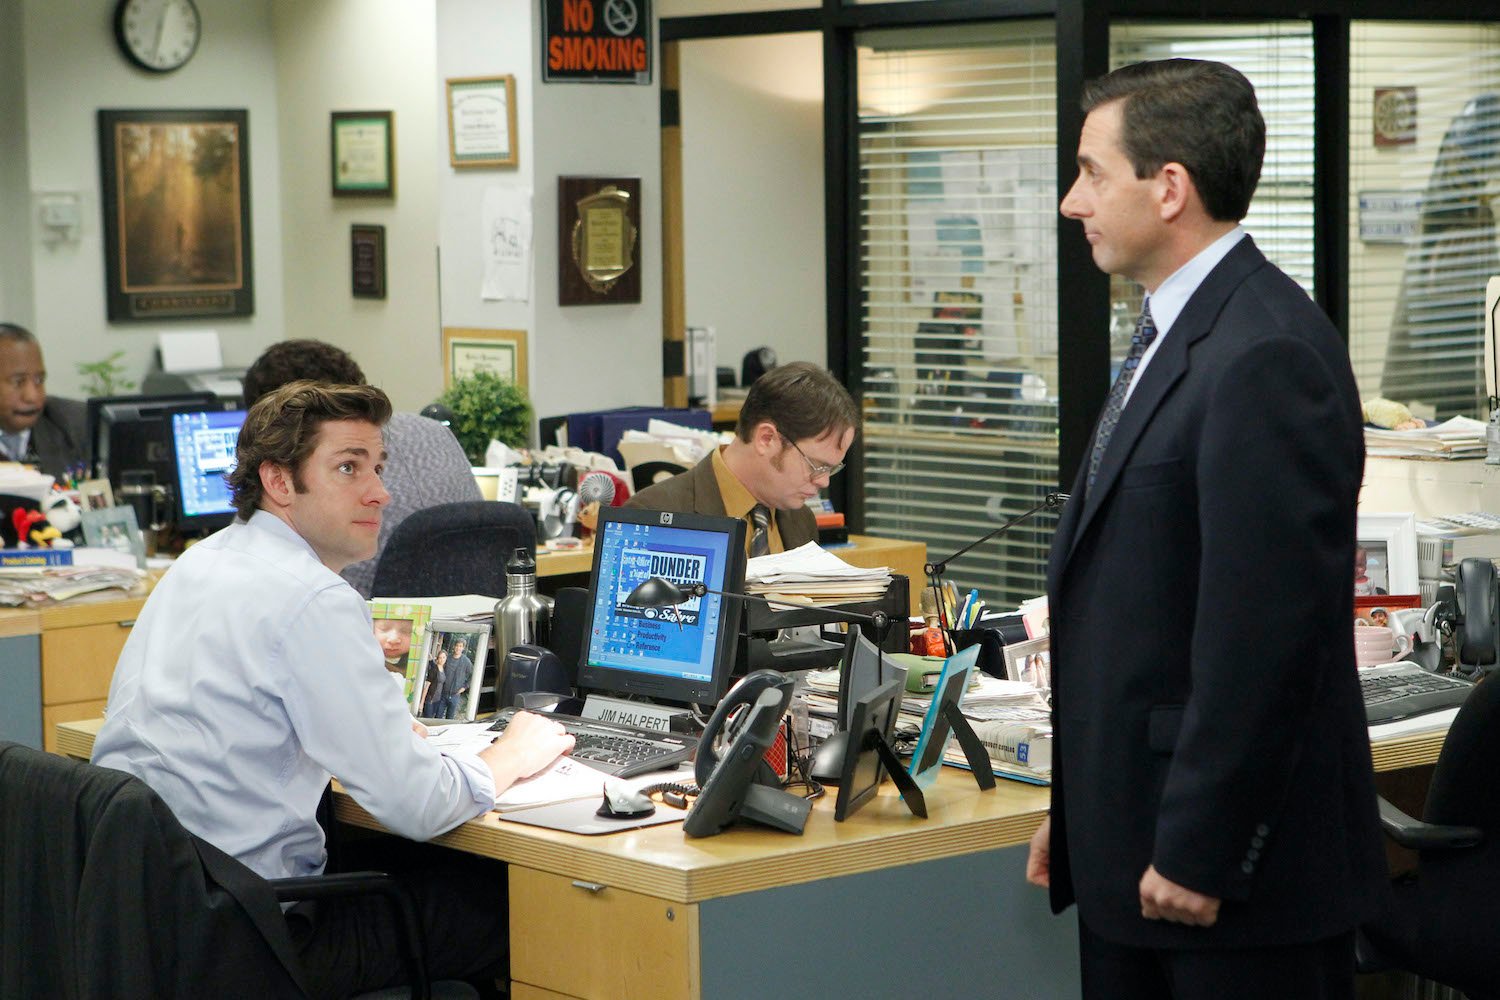 'The Office': John Krasinski as Jim Halpert, Rainn Wilson as Dwight Schrute, and Steve Carell as Michael Scott